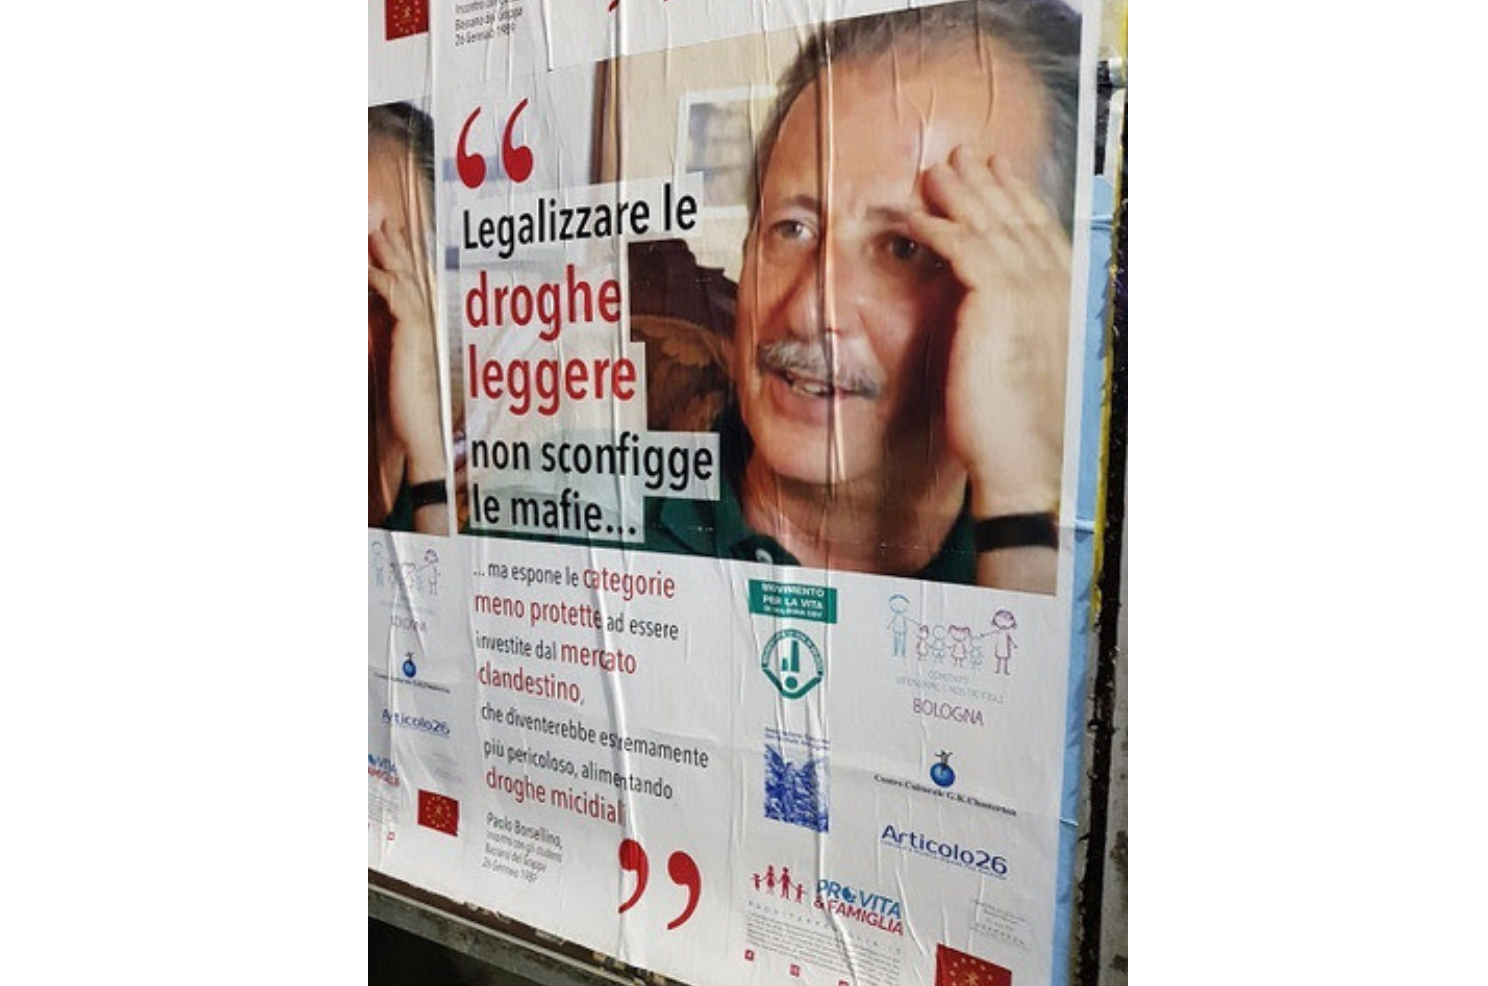 PV&F Emilia-Romagna: «No alla liberalizzazione delle droghe leggere, ricordare le parole di Paolo Borsellino» 1